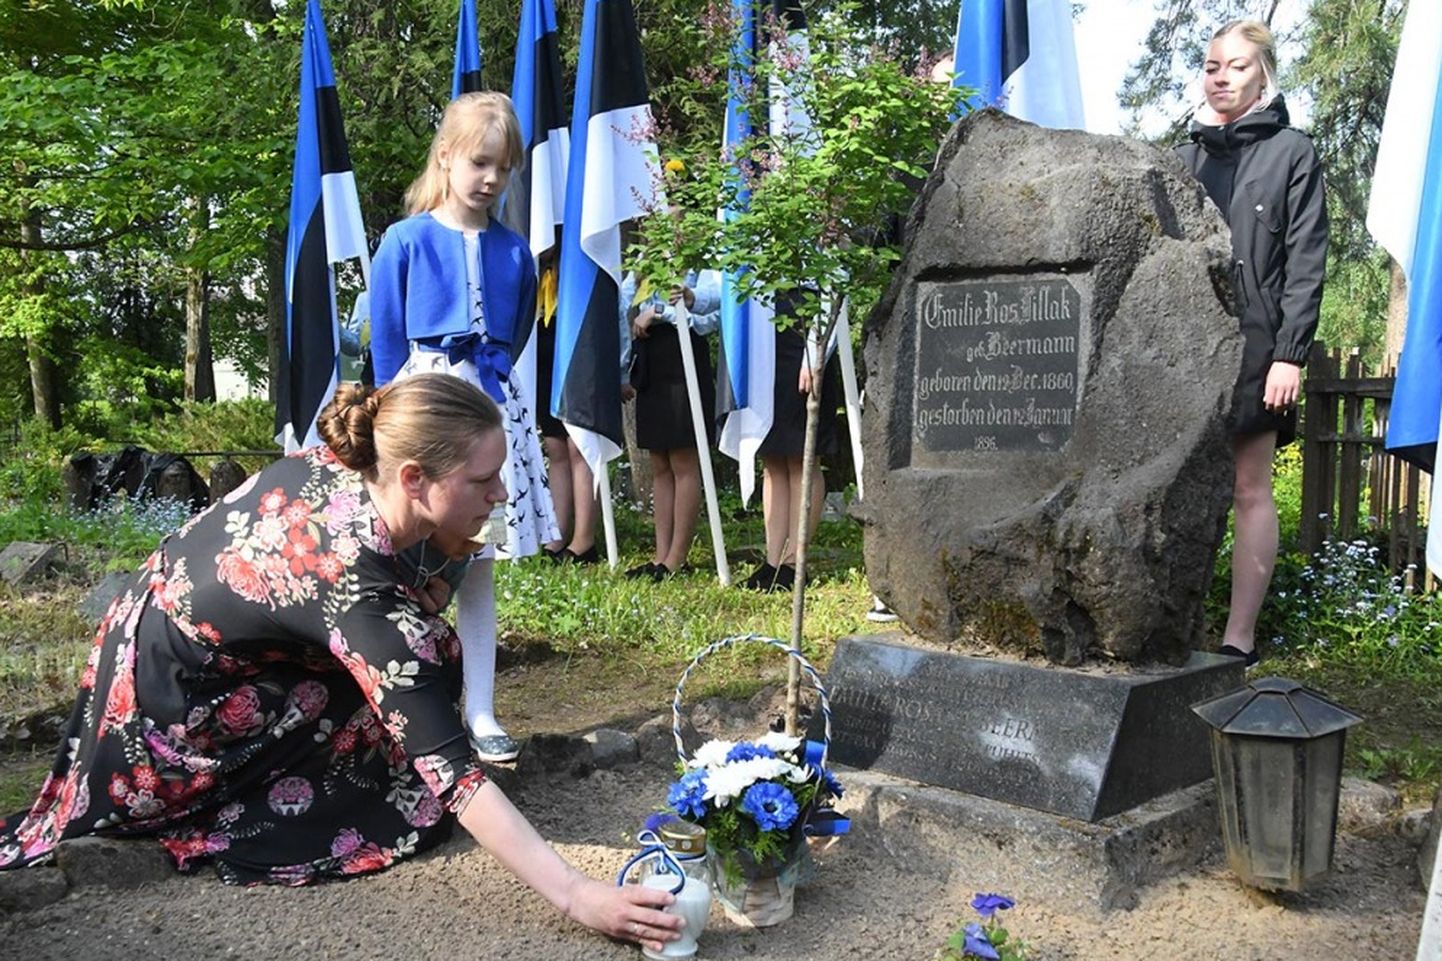 Eesti lipu päeval kogunes nii nooremat kui vanemat rahvast Viljandi Vanale kalmistule Emilie Rosalie Beermanni puhkepaika.